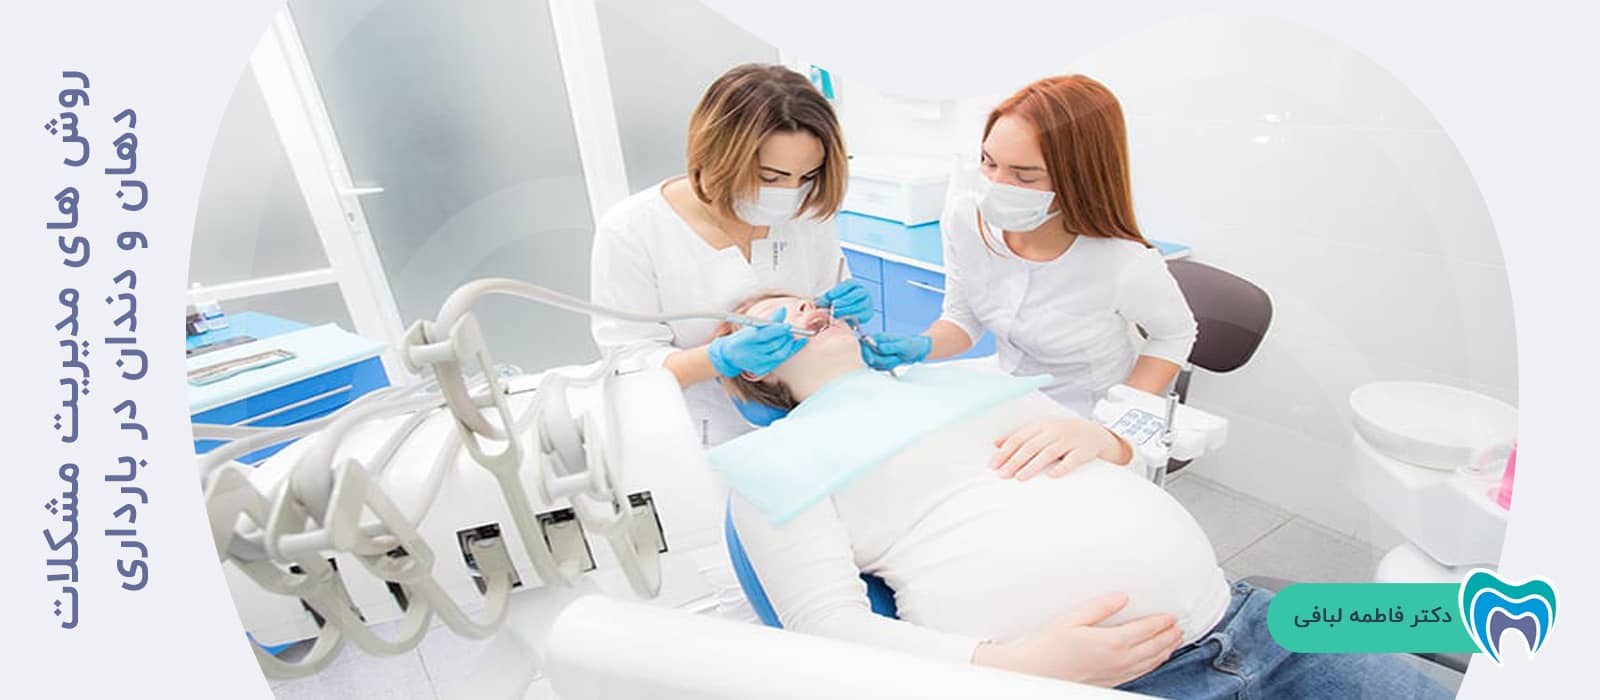 روش های مدیریت مشکلات دهان و دندان در بارداری